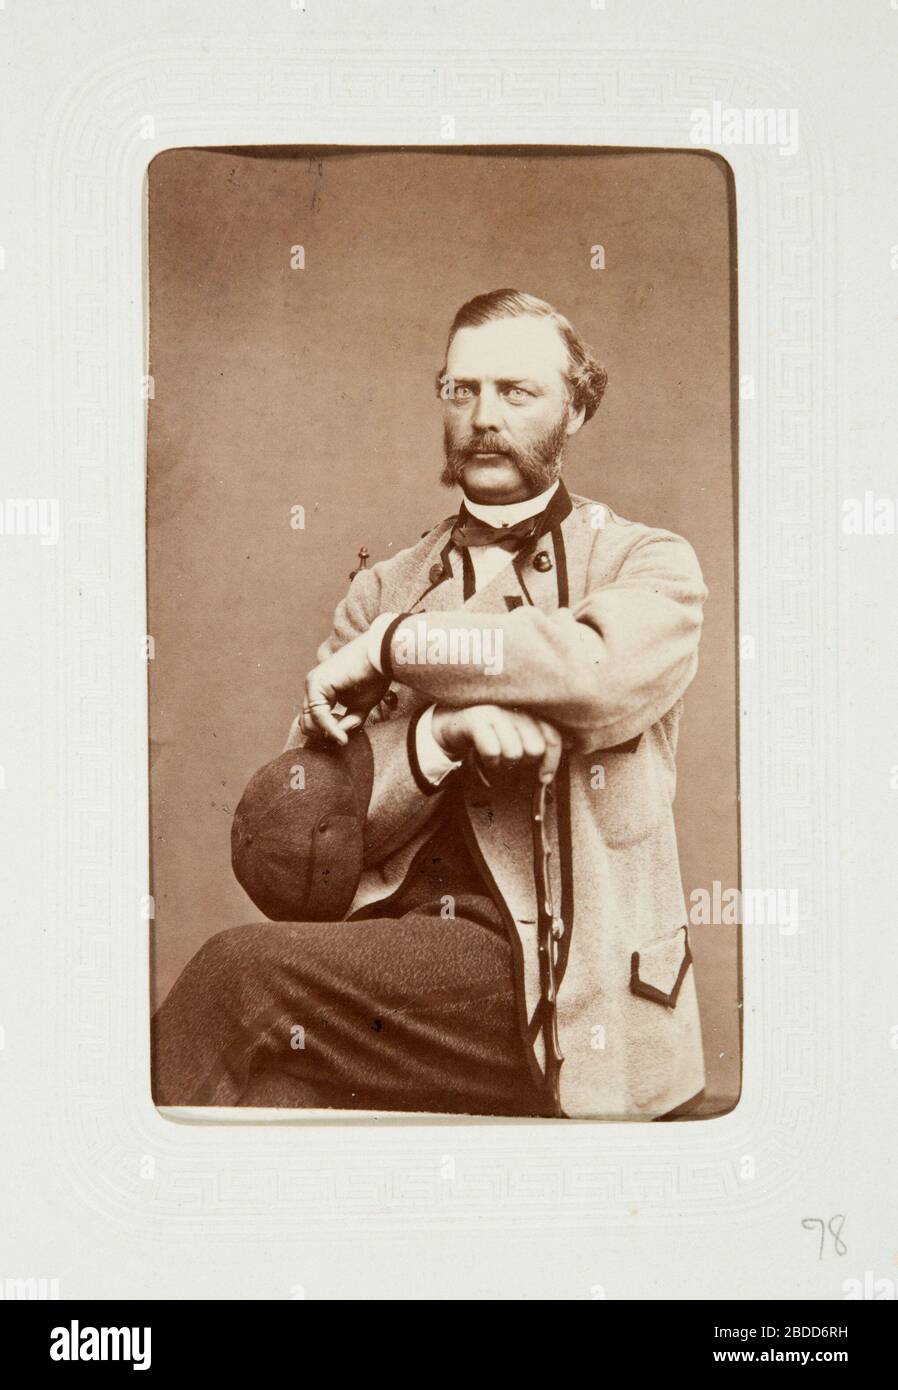 'Fotografiporträtt; Fotografiporträtt på man.; segunda mitad del siglo XIX fecha QS:P571,+1850-00-00T00:00:00Z/7; LSH 107770 (hm dig18924); ' Foto de stock